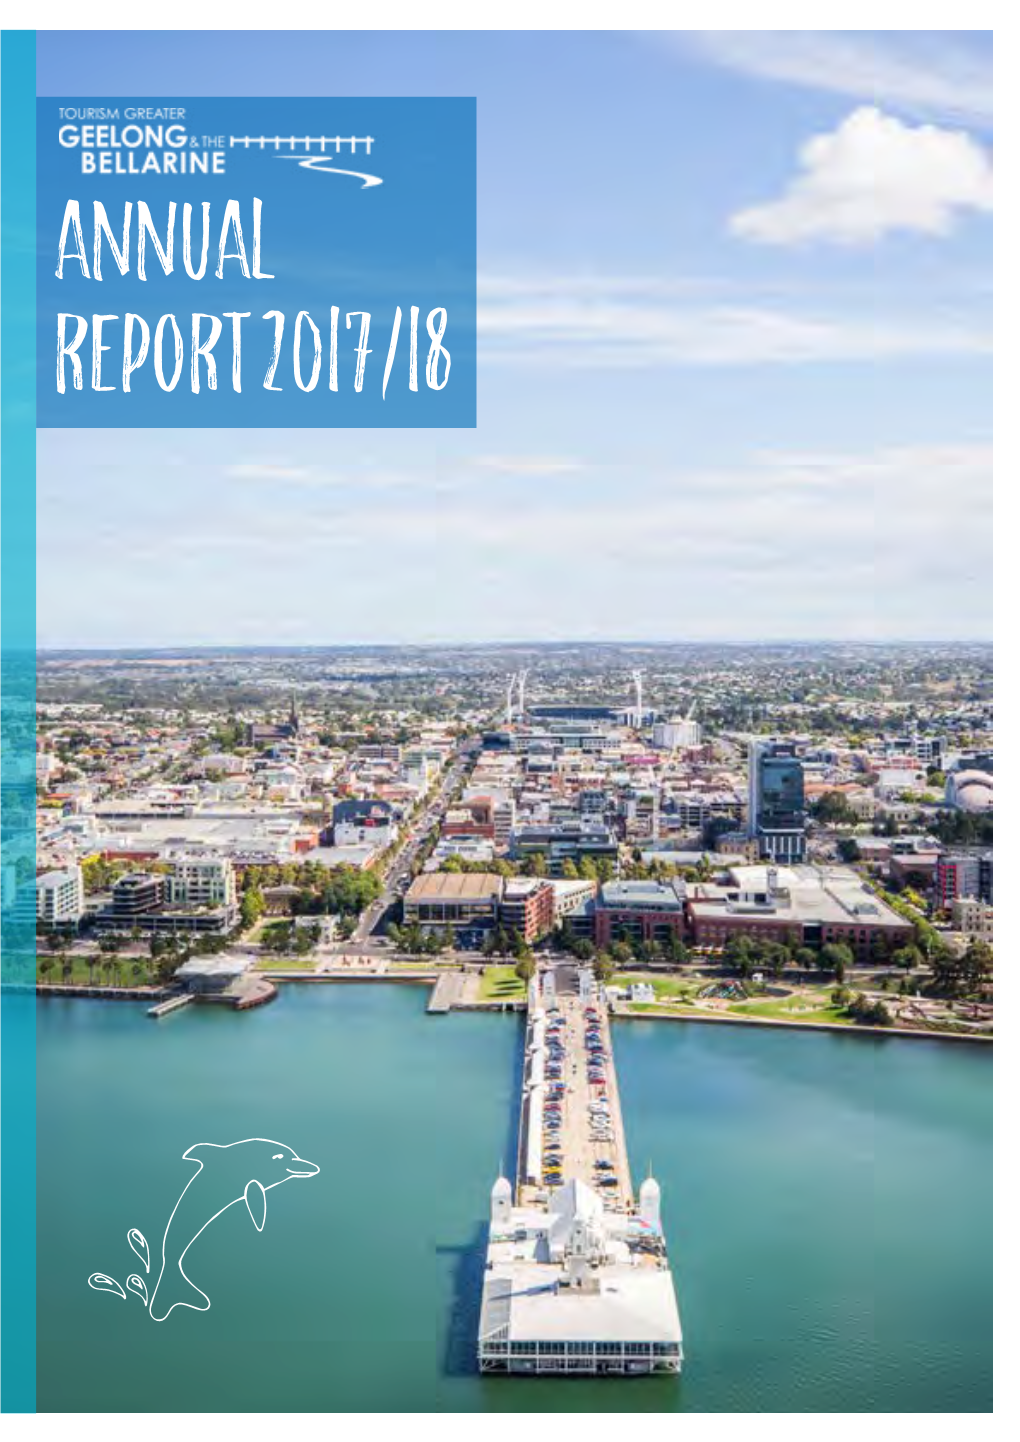 2017/18 Annual Report Annual Report 2017/18